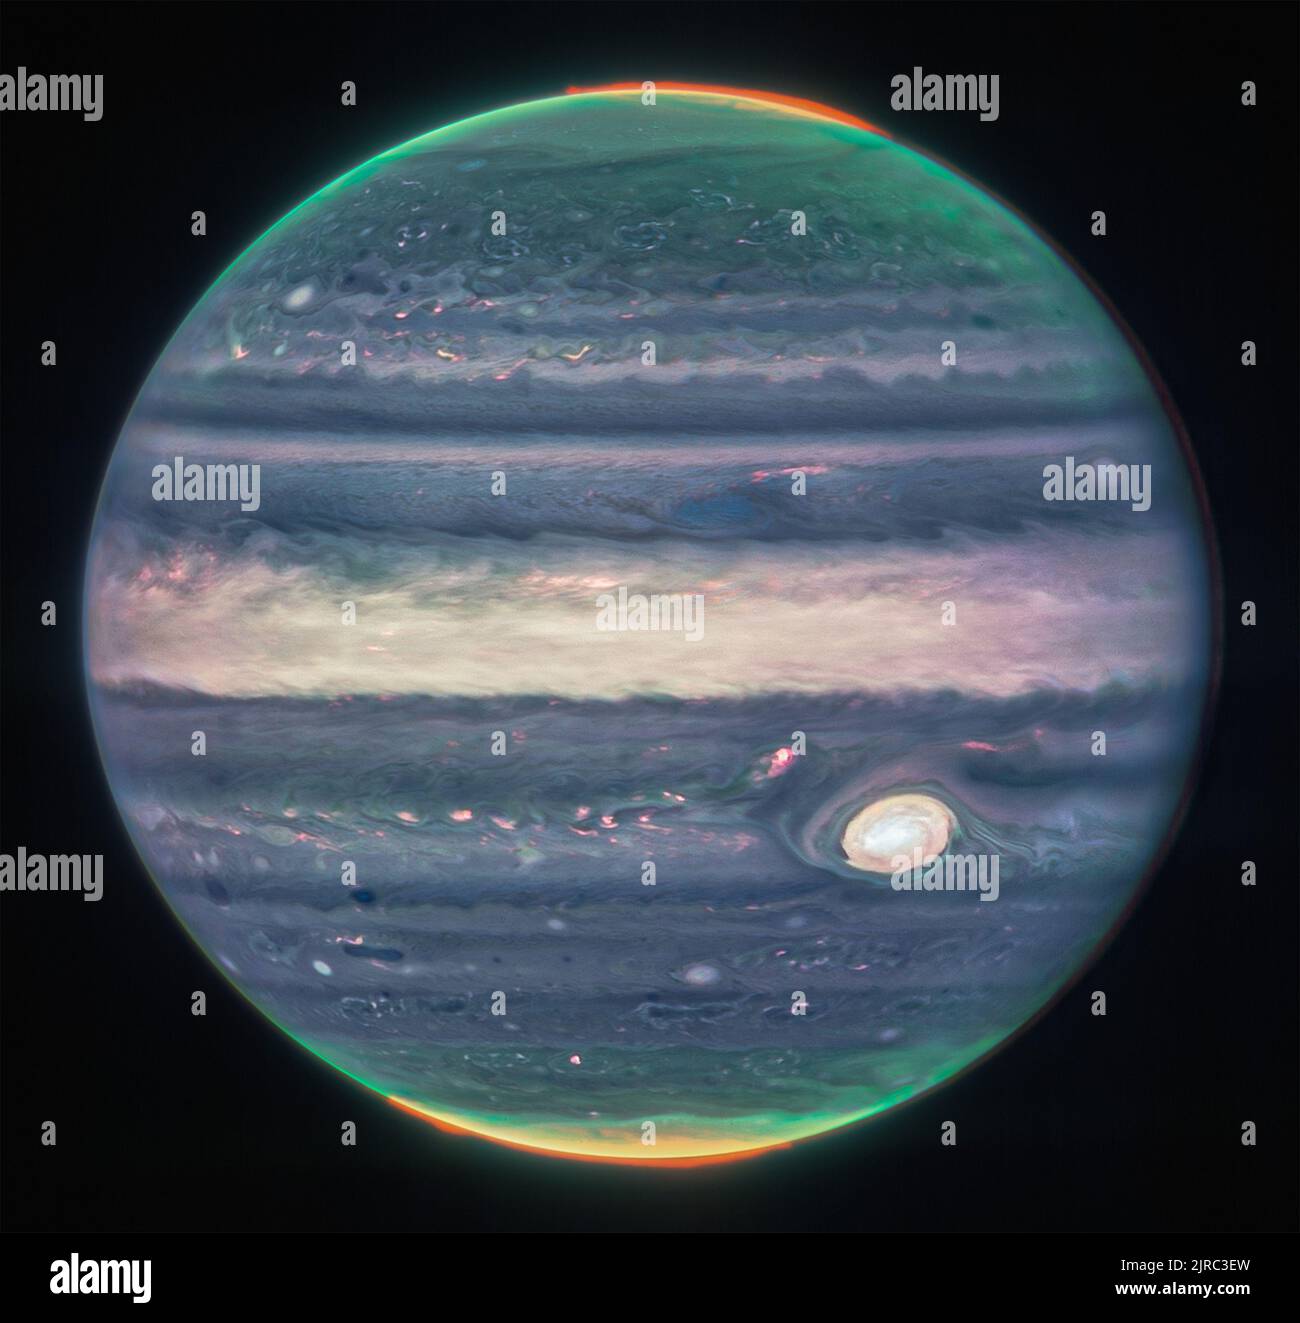 Das James Webb Space Telescope der NASA hat neue Bilder von Jupiter aufgenommen und zeigt die riesigen Stürme, starken Winde, Auroren und extremen Temperatur- und Druckbedingungen des Planeten. Die beiden Bilder stammen von der Nahinfrarot-Kamera (NIRCam) des Observatoriums, die über drei spezielle Infrarotfilter verfügt, die Details des Planeten zeigen. Da Infrarotlicht für das menschliche Auge unsichtbar ist, wurde das Licht auf das sichtbare Spektrum abgebildet. Im Allgemeinen erscheinen die längsten Wellenlängen röter, und die kürzesten Wellenlängen werden blau dargestellt. Kredit: UPI/Alamy Live Nachrichten Stockfoto